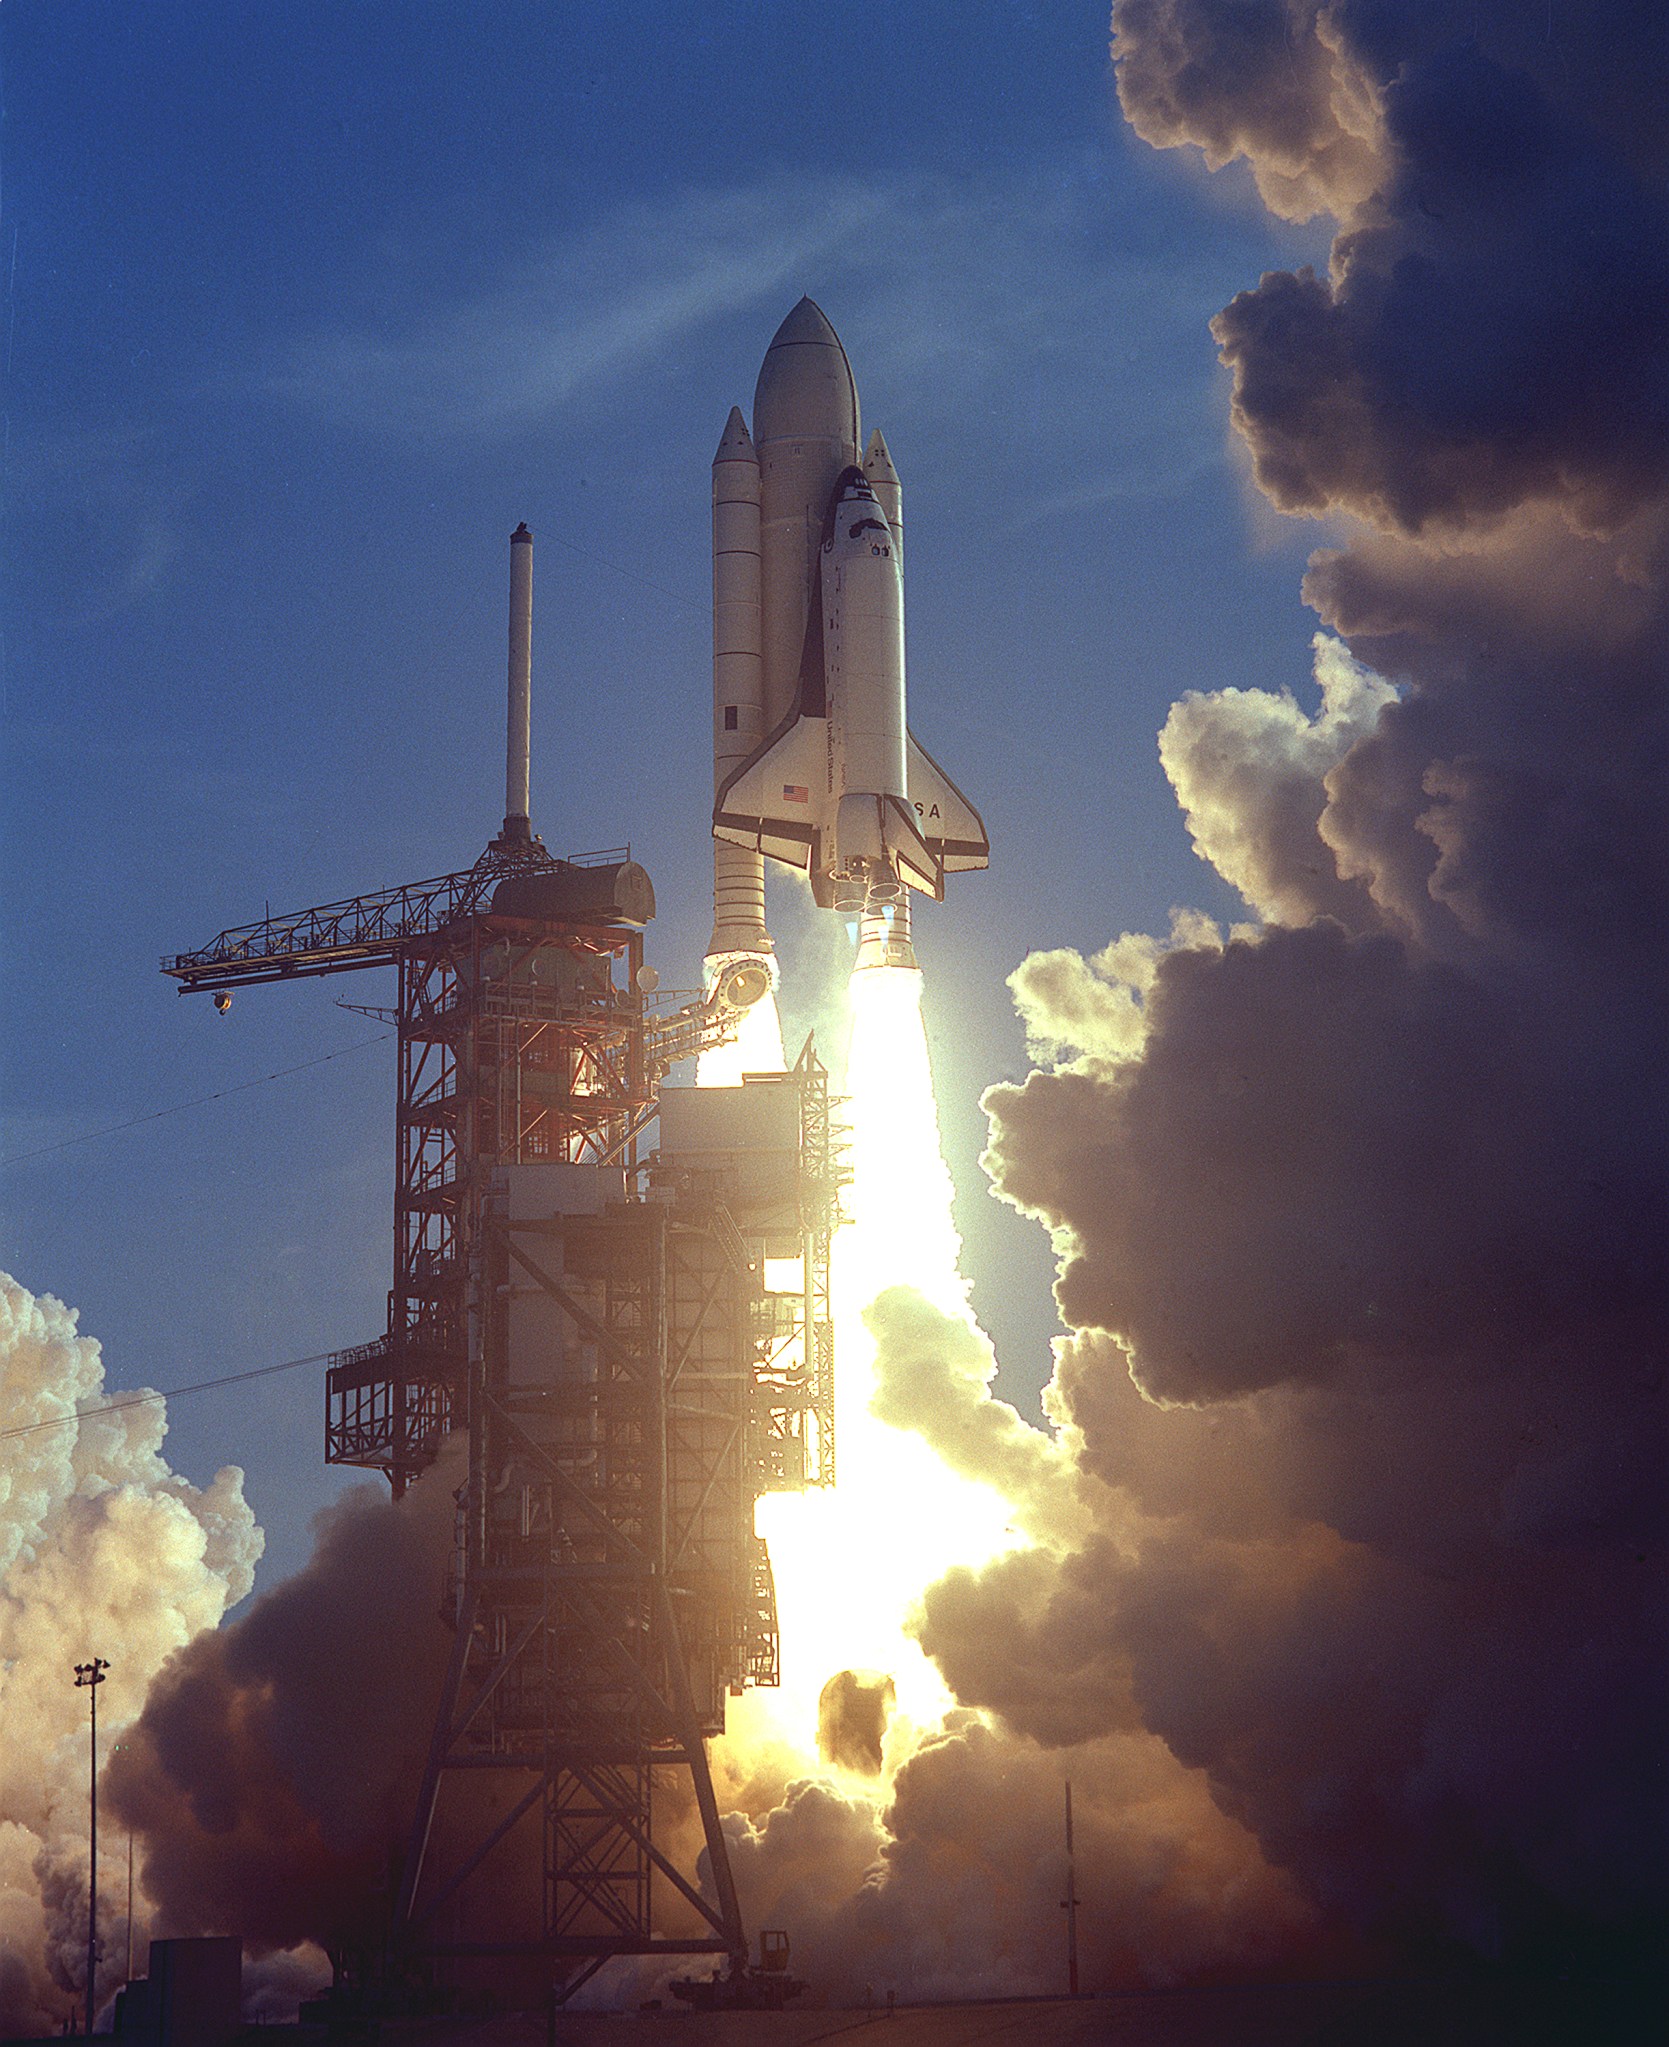 El primer transbordador espacial despega de una plataforma de lanzamiento. Las nubes blancas se elevan hacia arriba, oscureciendo el tercio más a la derecha de la imagen. De los cohetes salen llamas brillantes; Por el contrario, el resto de la imagen es tenue.